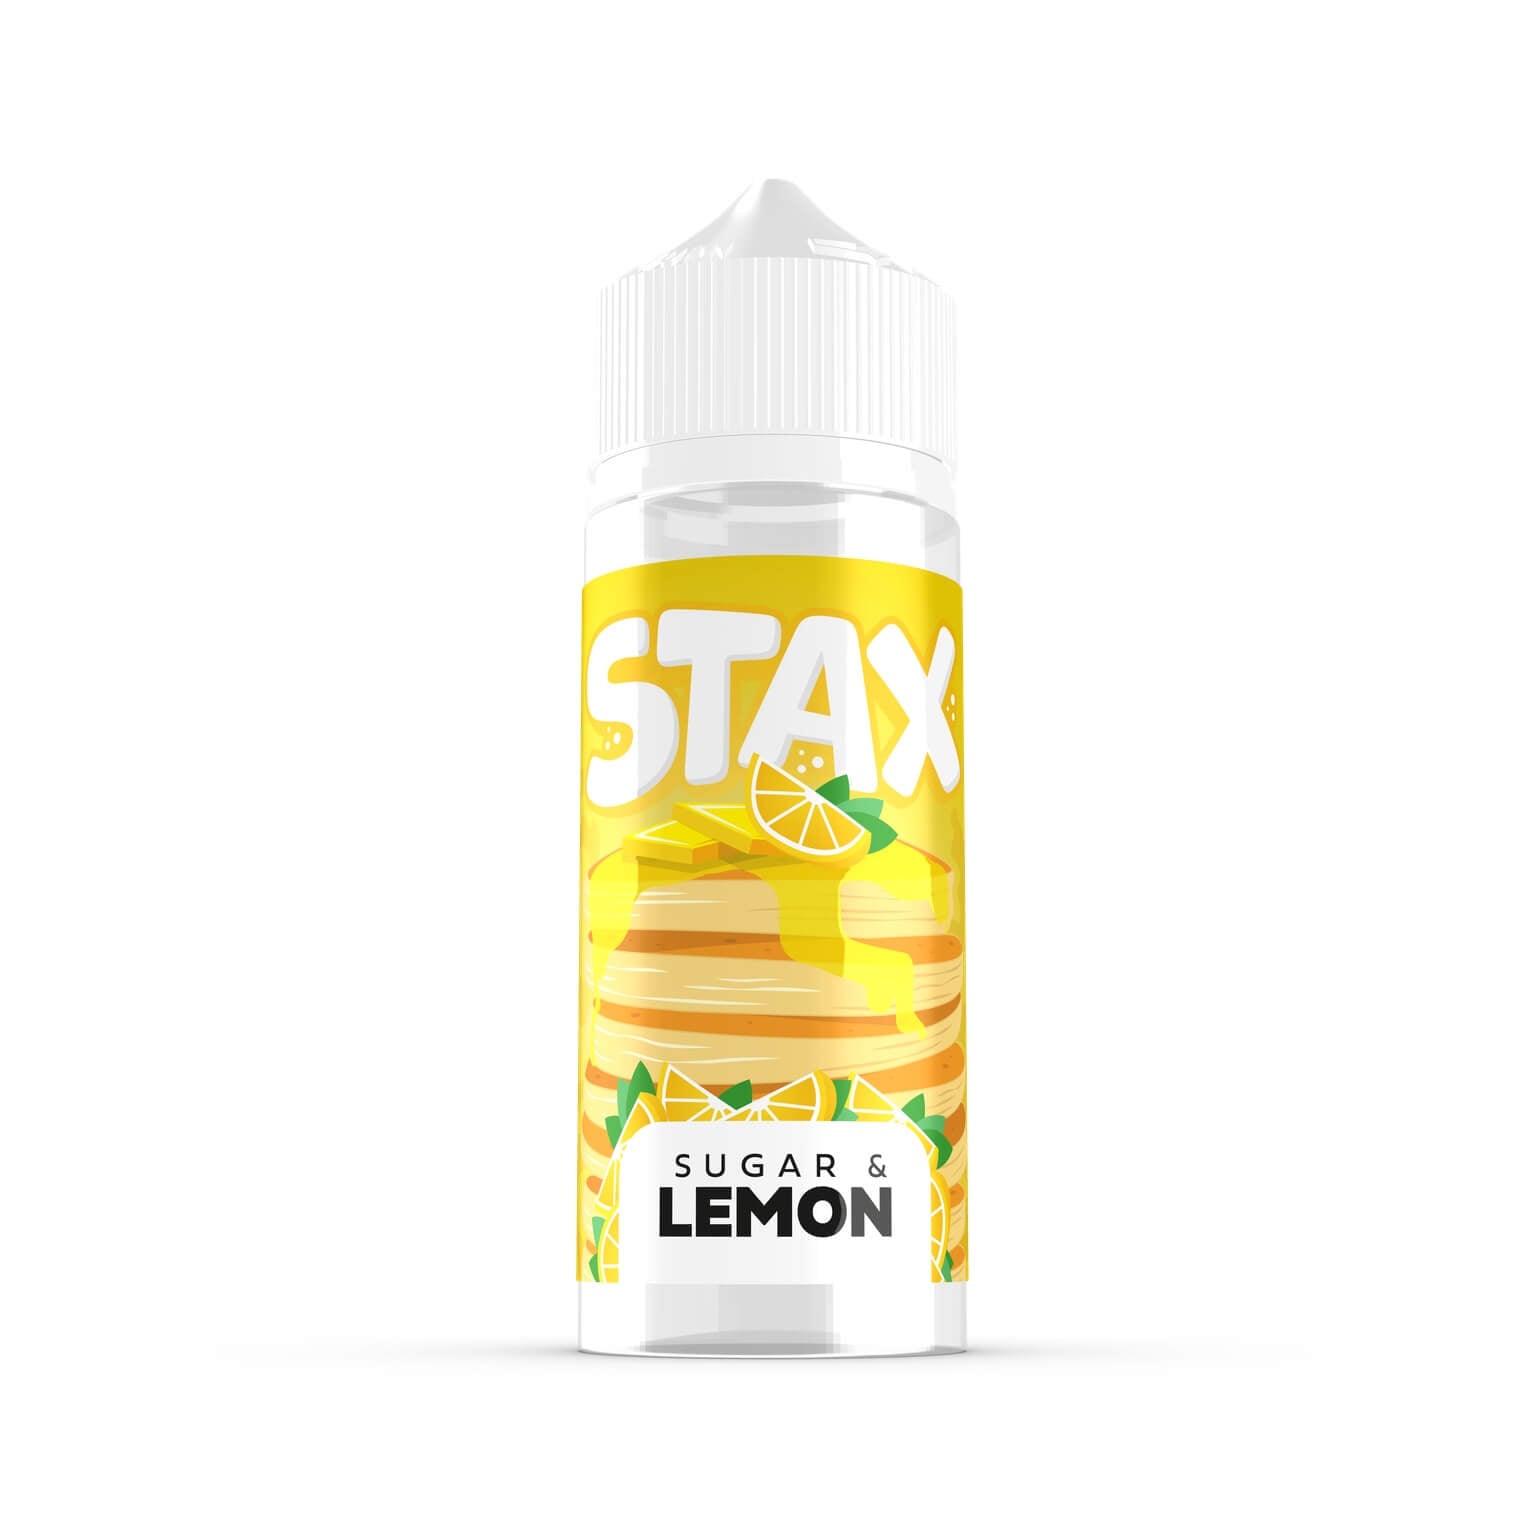 Sugar & Lemon Shortfill by Stax. - 100ml-Supergood.